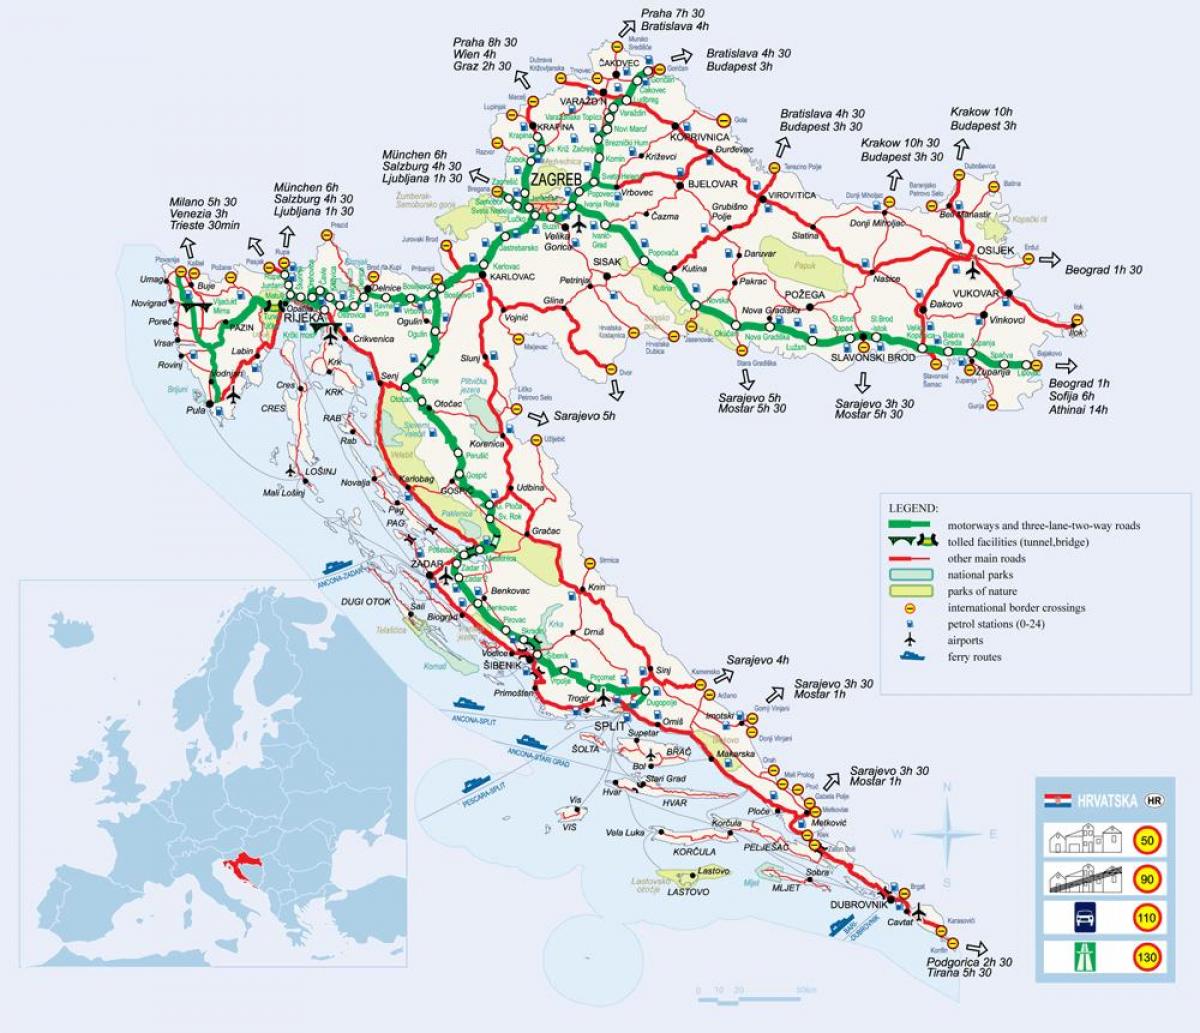 kort over kroatien tog